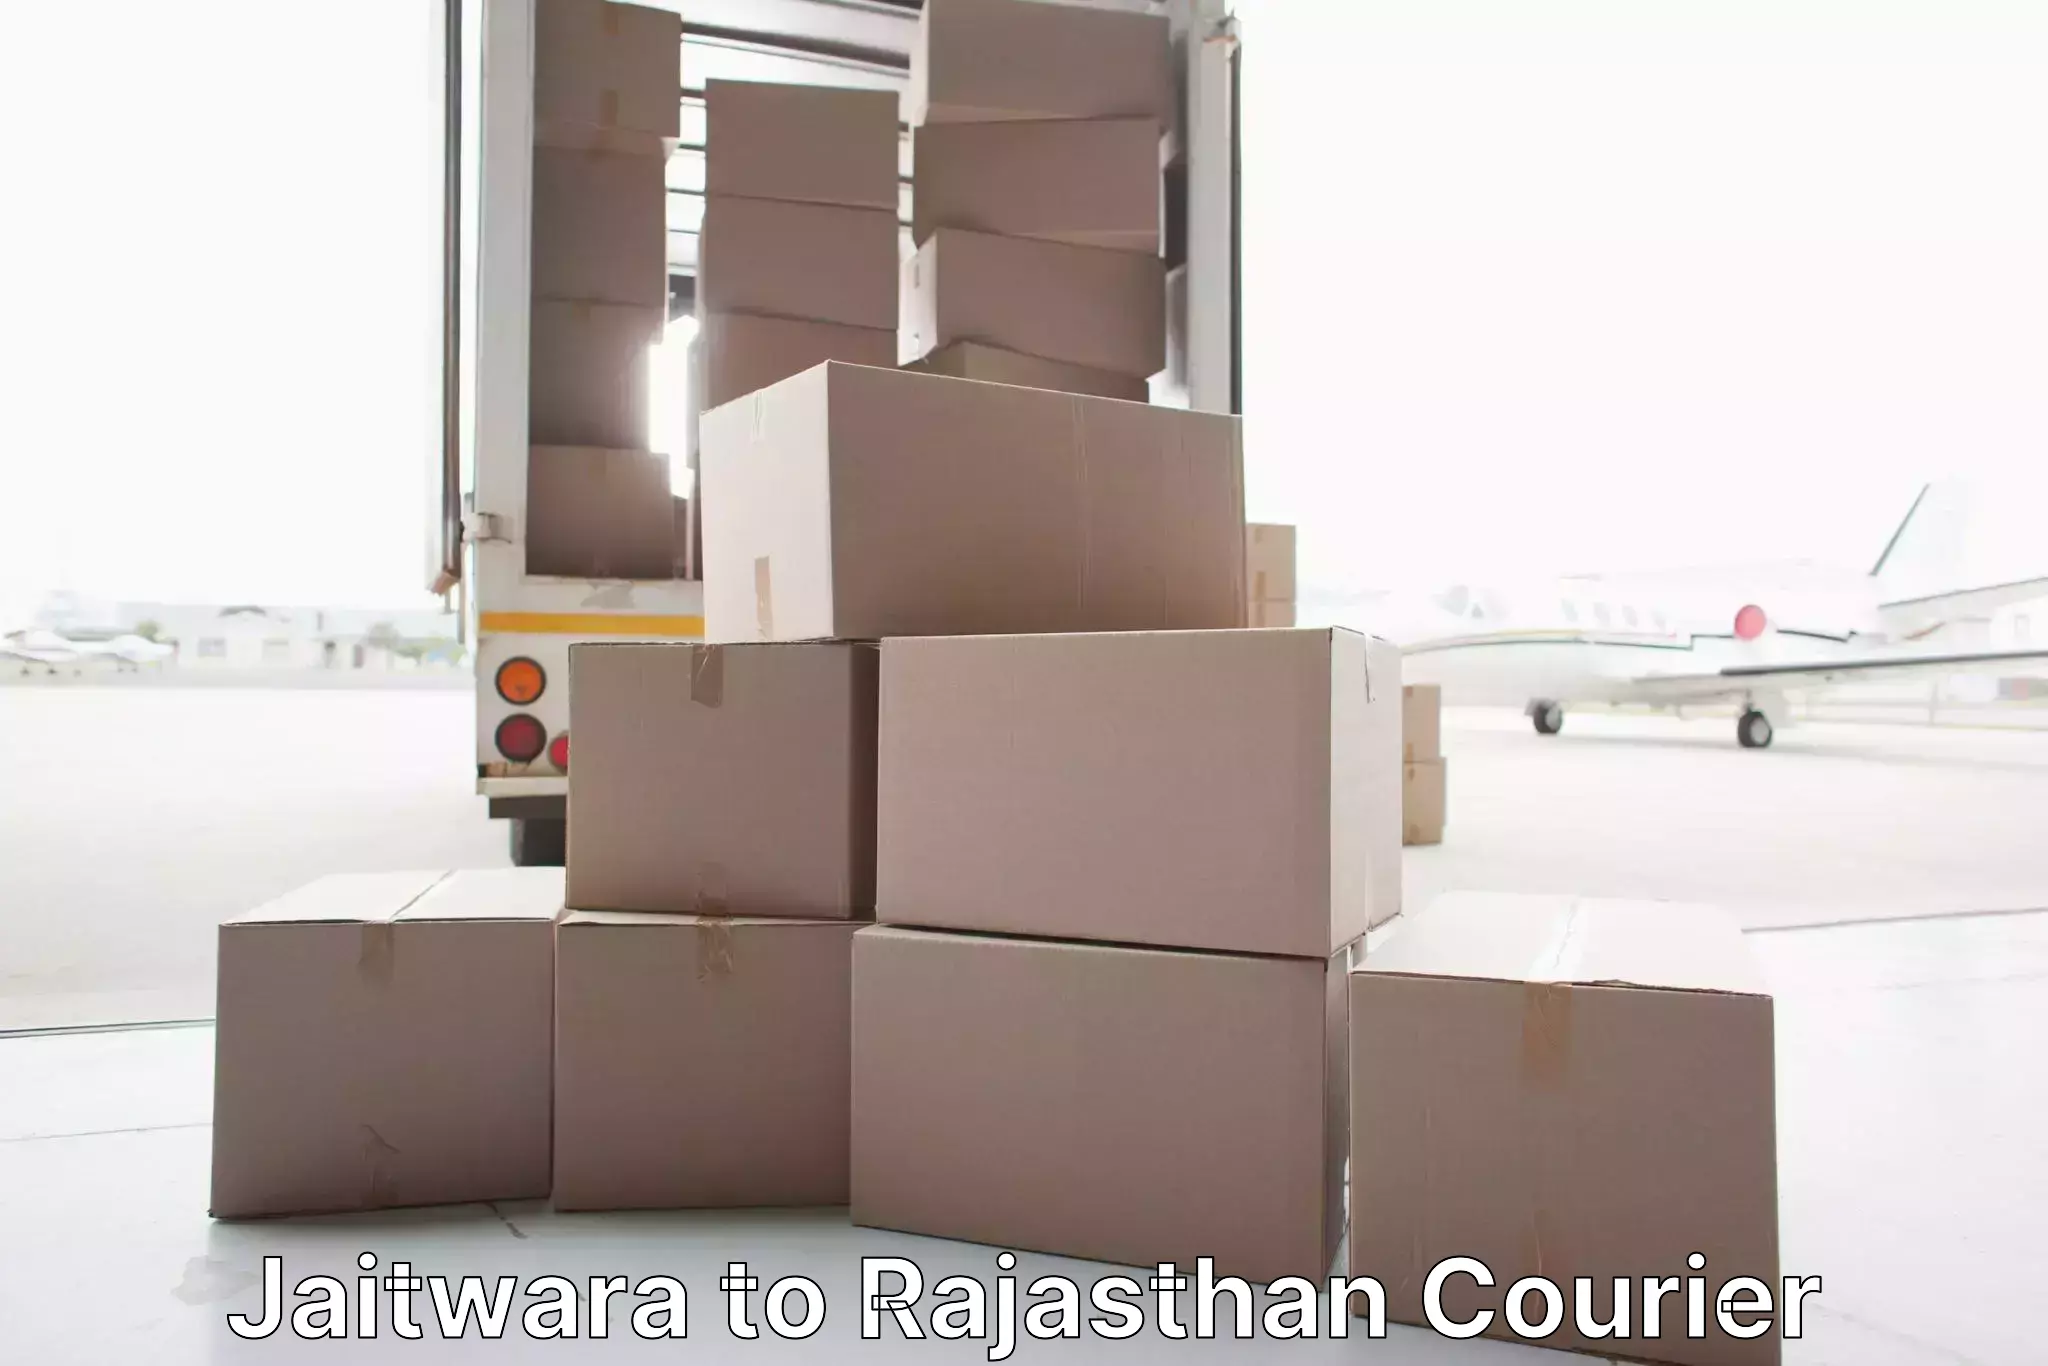 Household moving companies in Jaitwara to Nagar